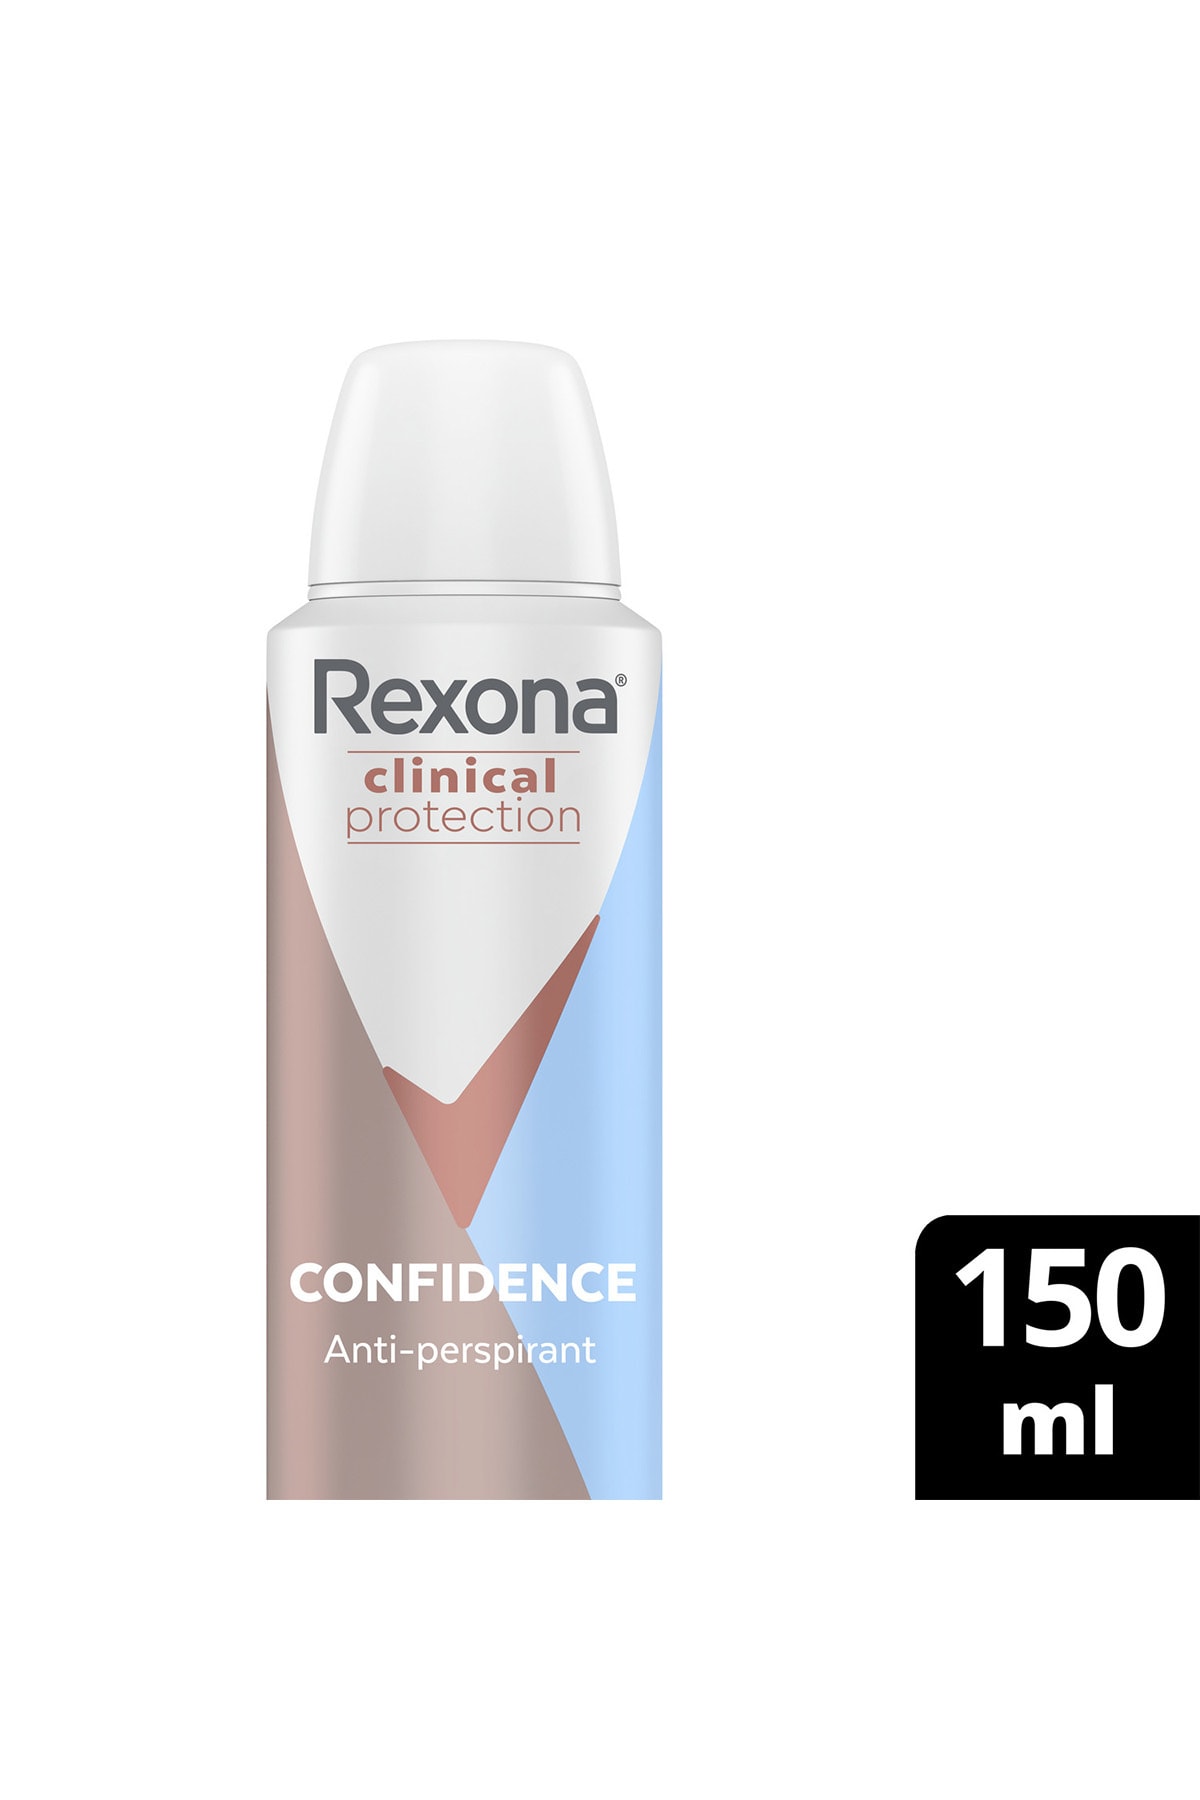 Rexona Clinical Protection Kadın Sprey Deodorant Confidence 96 Saat Koruma 150 ml